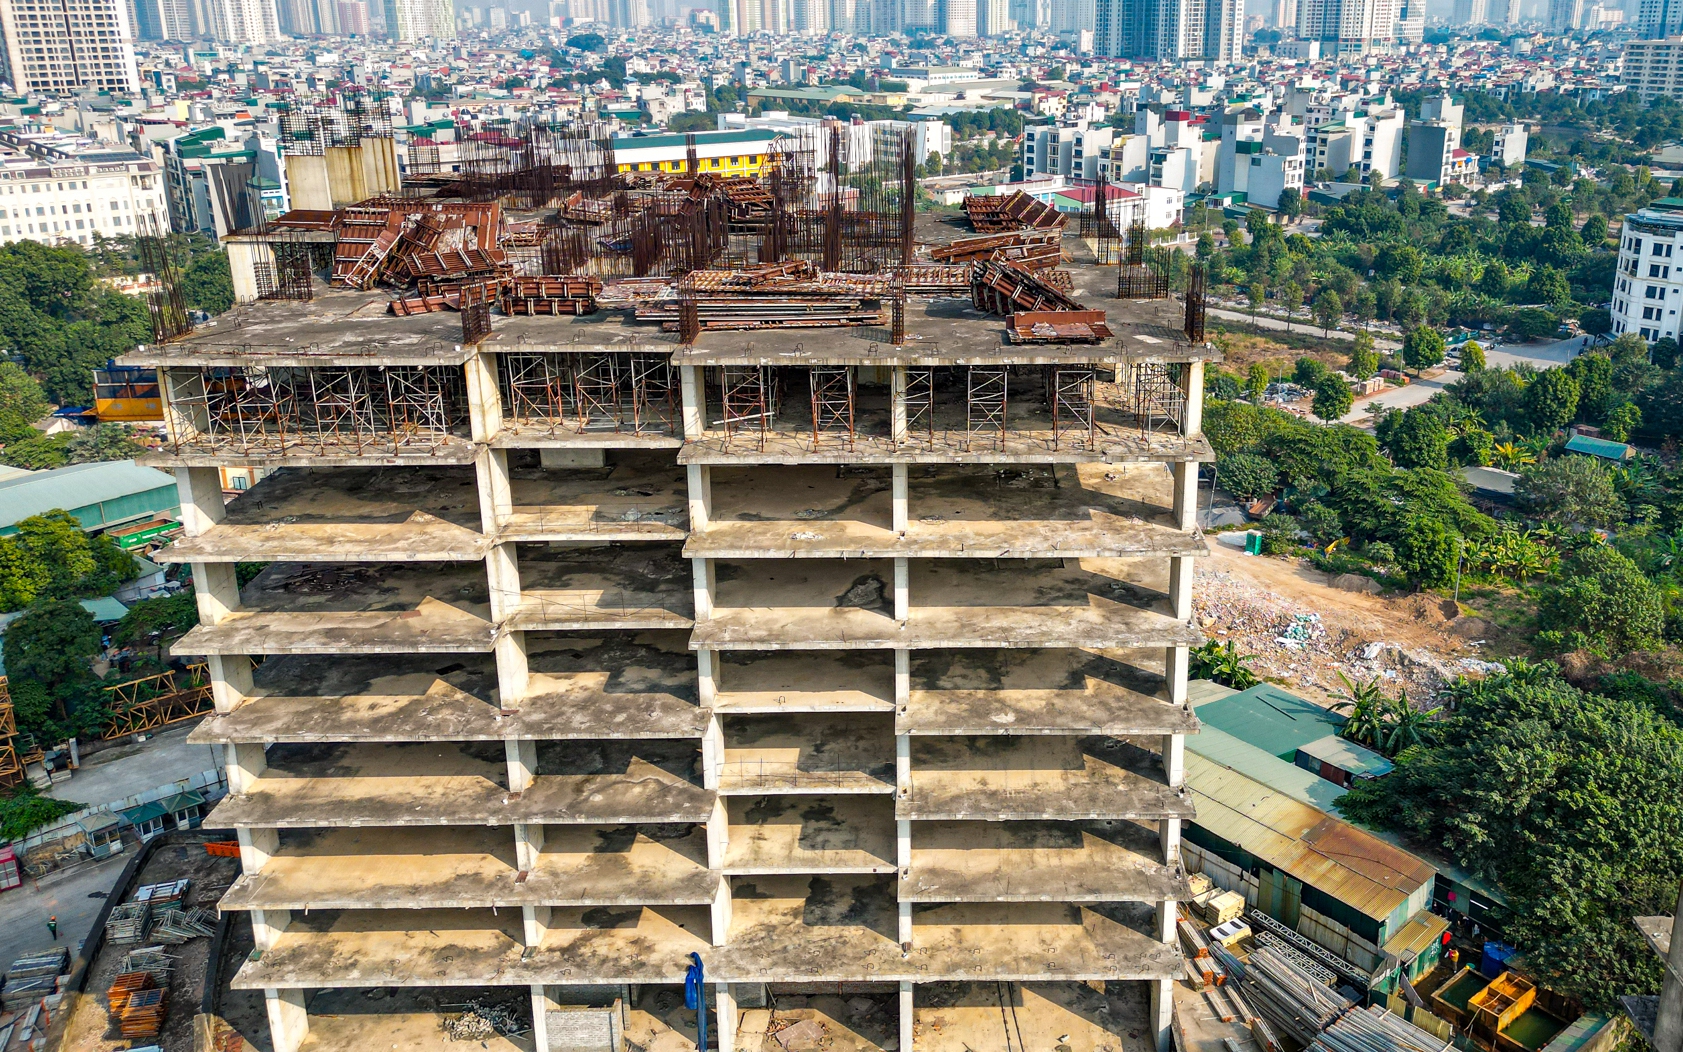 Siêu dự án 13 tòa chung cư giữa trung tâm Hà Nội, đi qua 2 cơn sốt đất vẫn là "hố chôn tiền" hoen gỉ nghìn tỷ, đến nay CEO bị cấm xuất cảnh